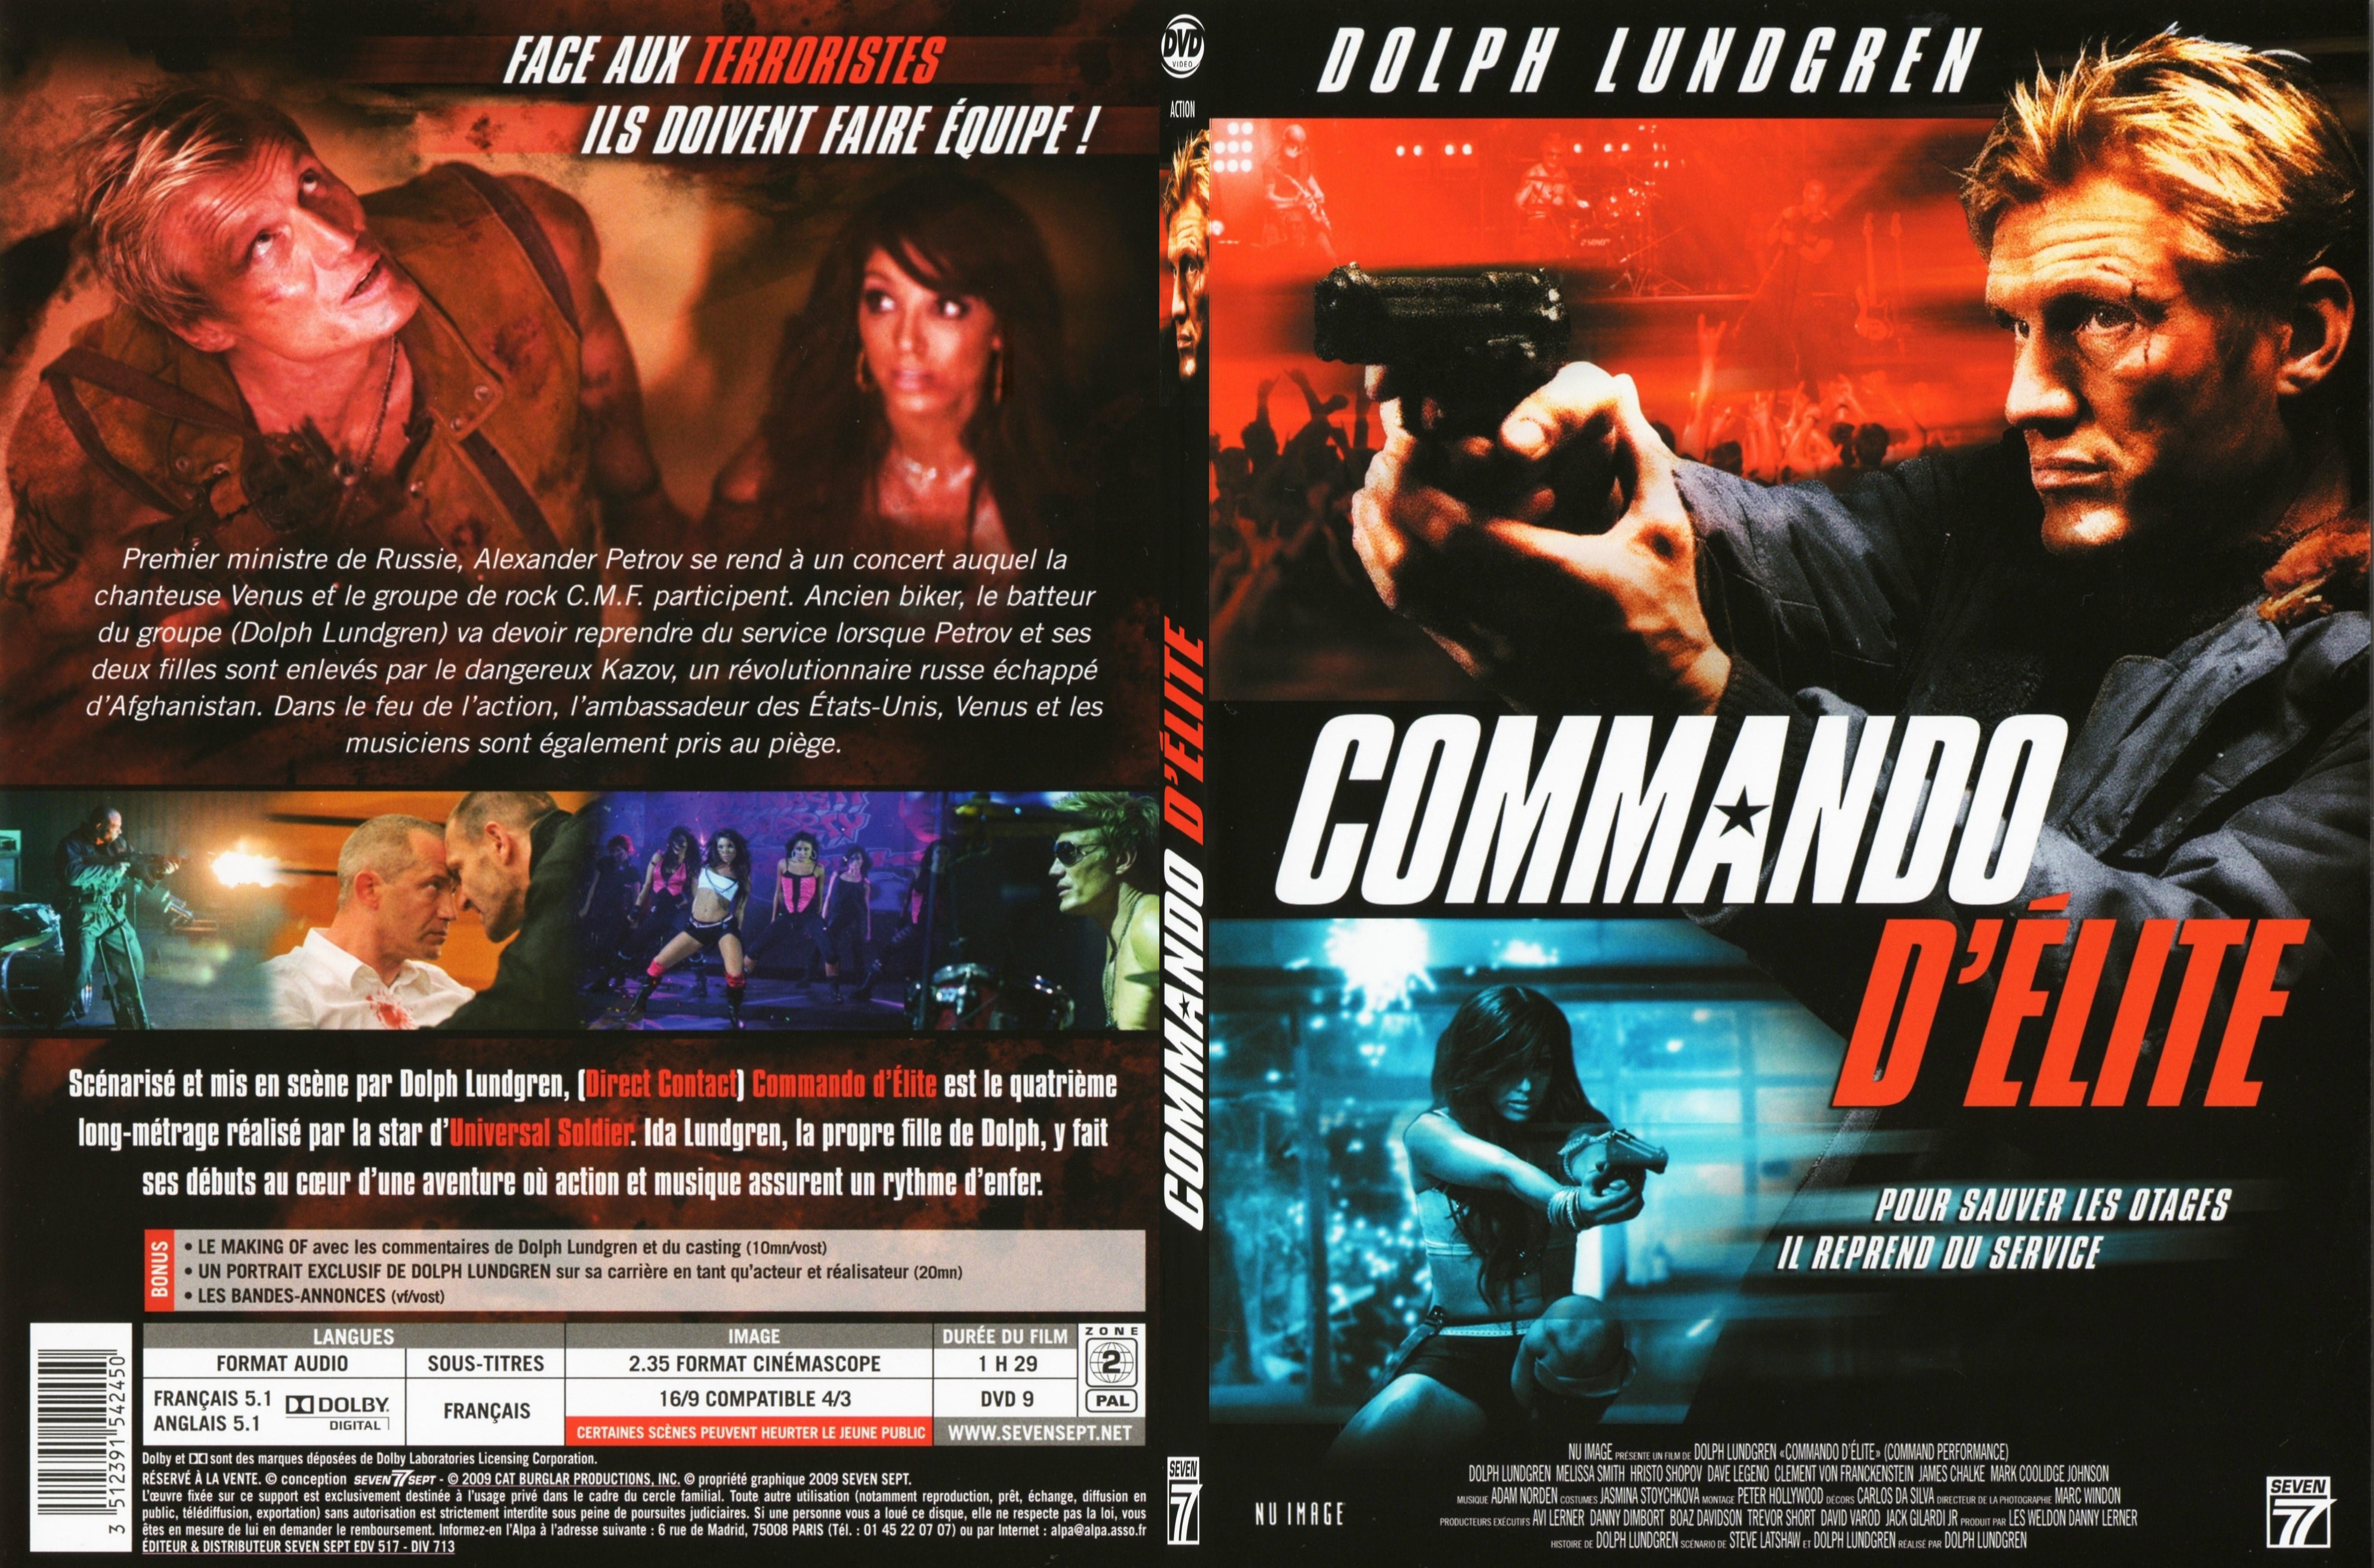 Jaquette DVD Commando d